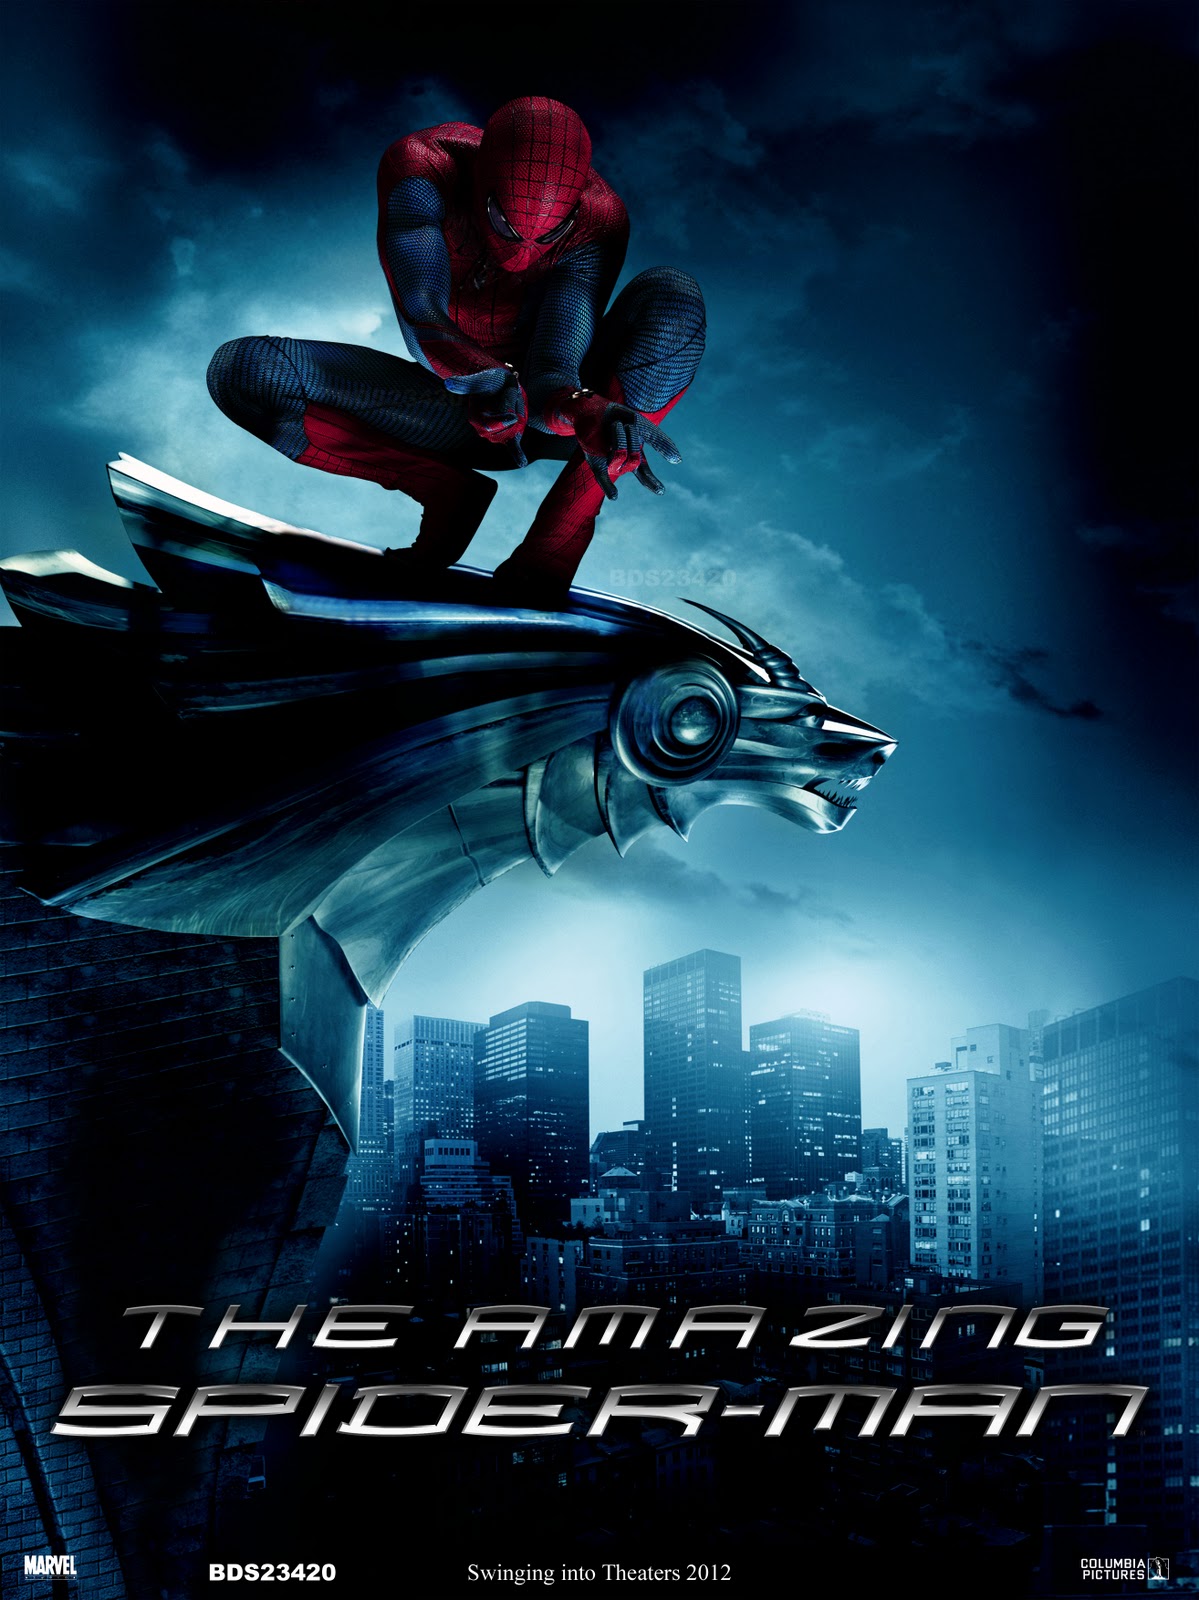 http://4.bp.blogspot.com/-U13KLLgMBbU/T_MzpCpjXDI/AAAAAAAADIk/ATHQUSD07po/s1600/The-Amazing-Spider-Man-2012-movie-wallpaper.jpg